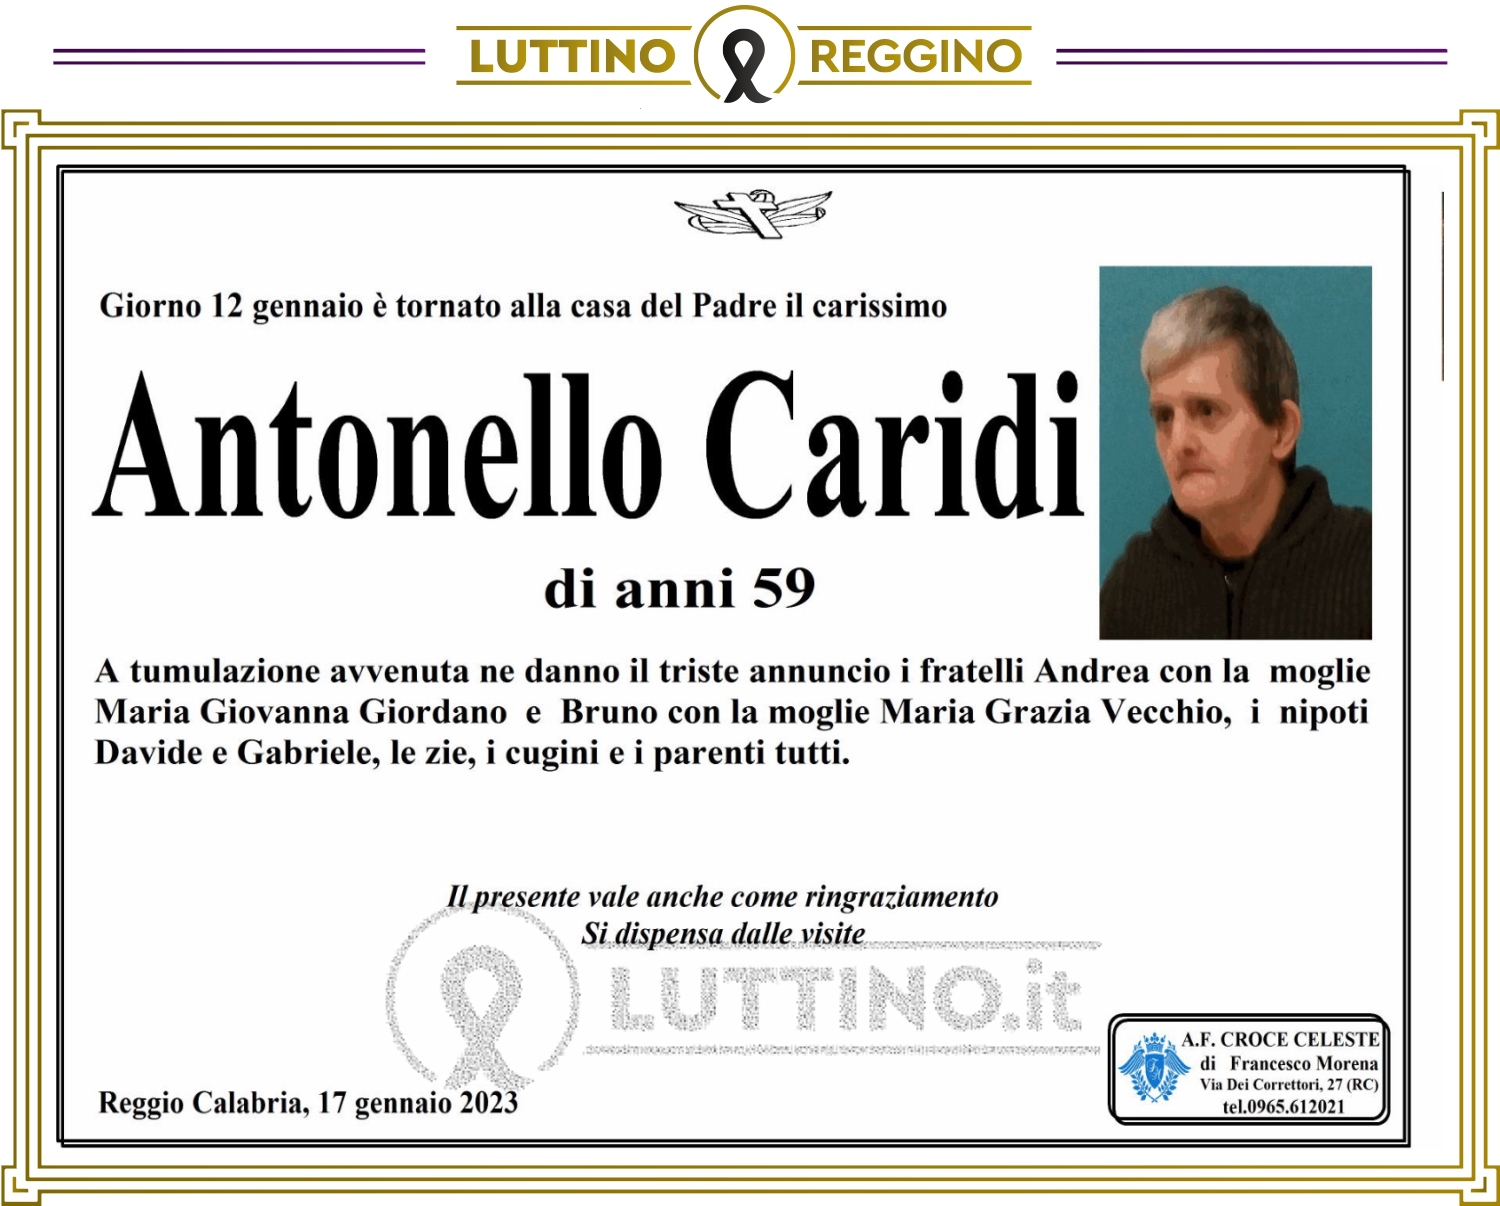 Antonello  Caridi